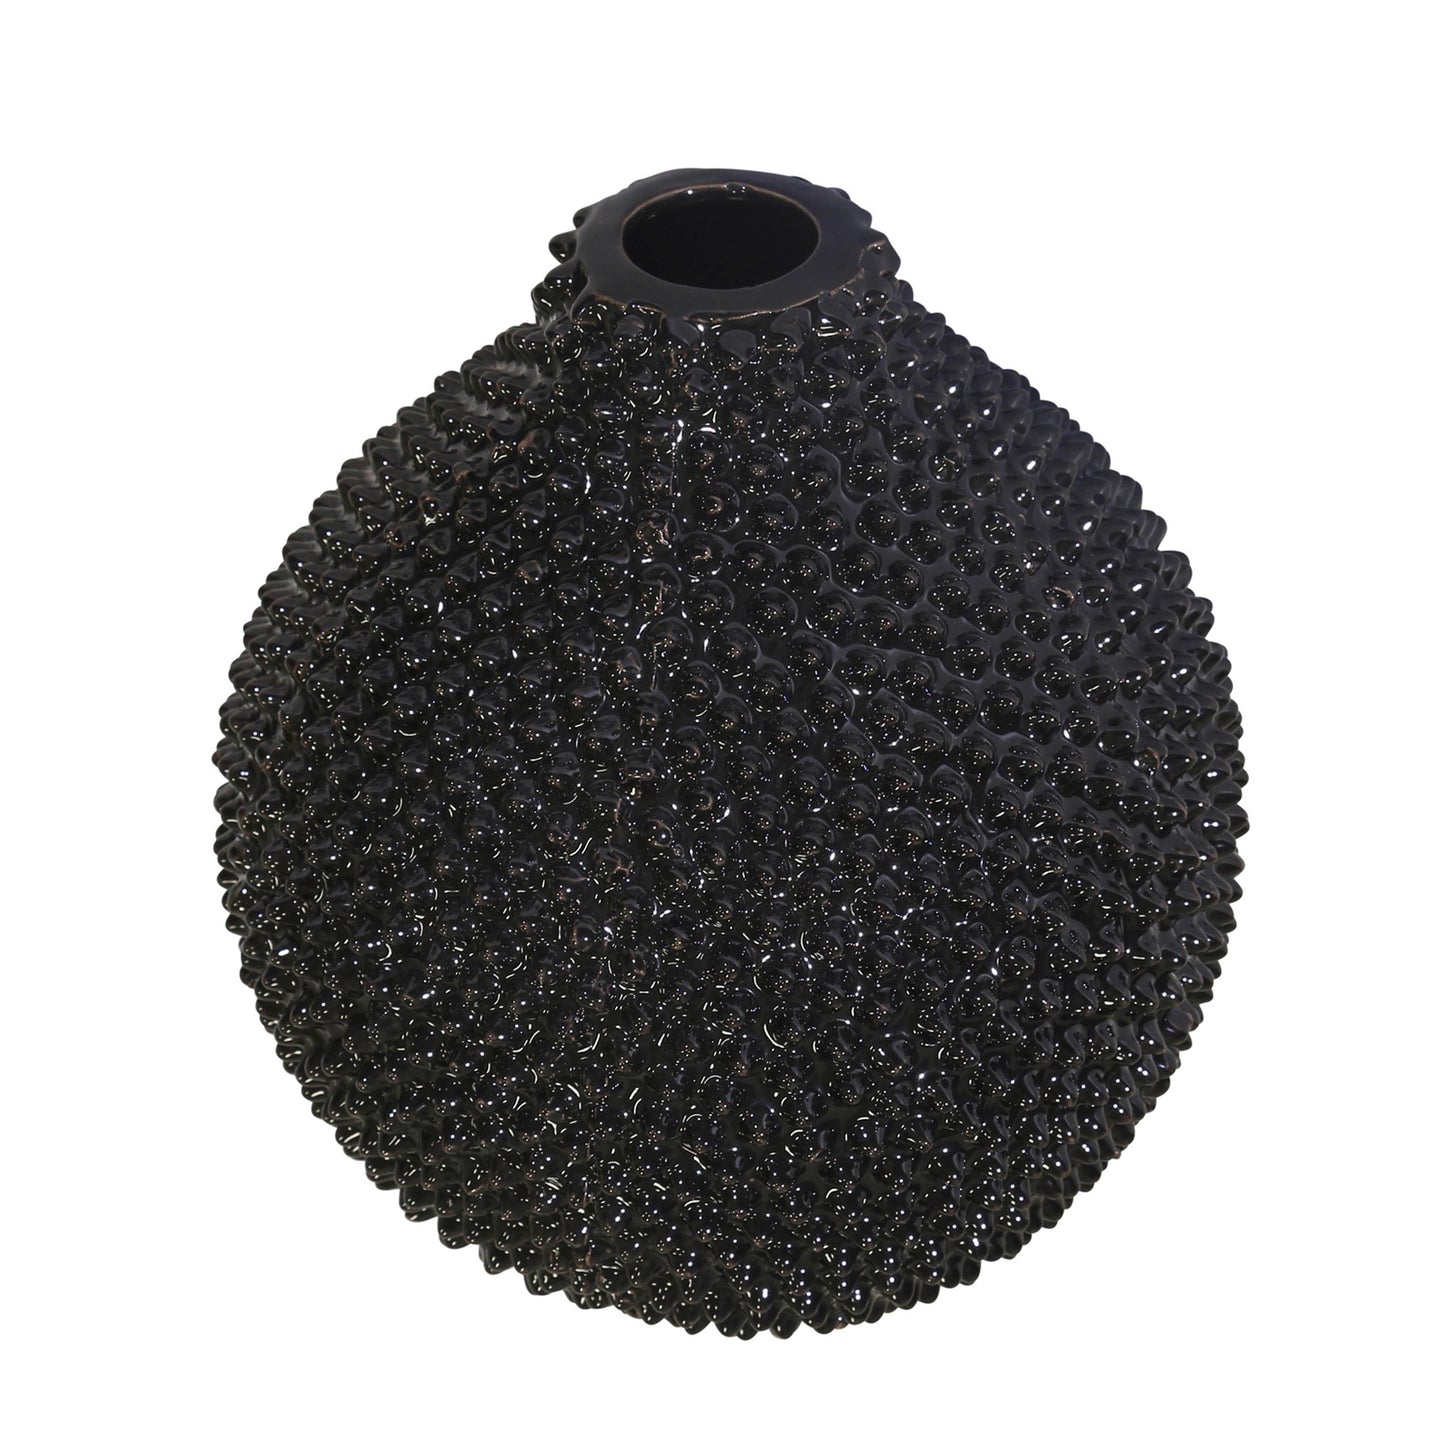 Erich Black Ceramic Vase 8"